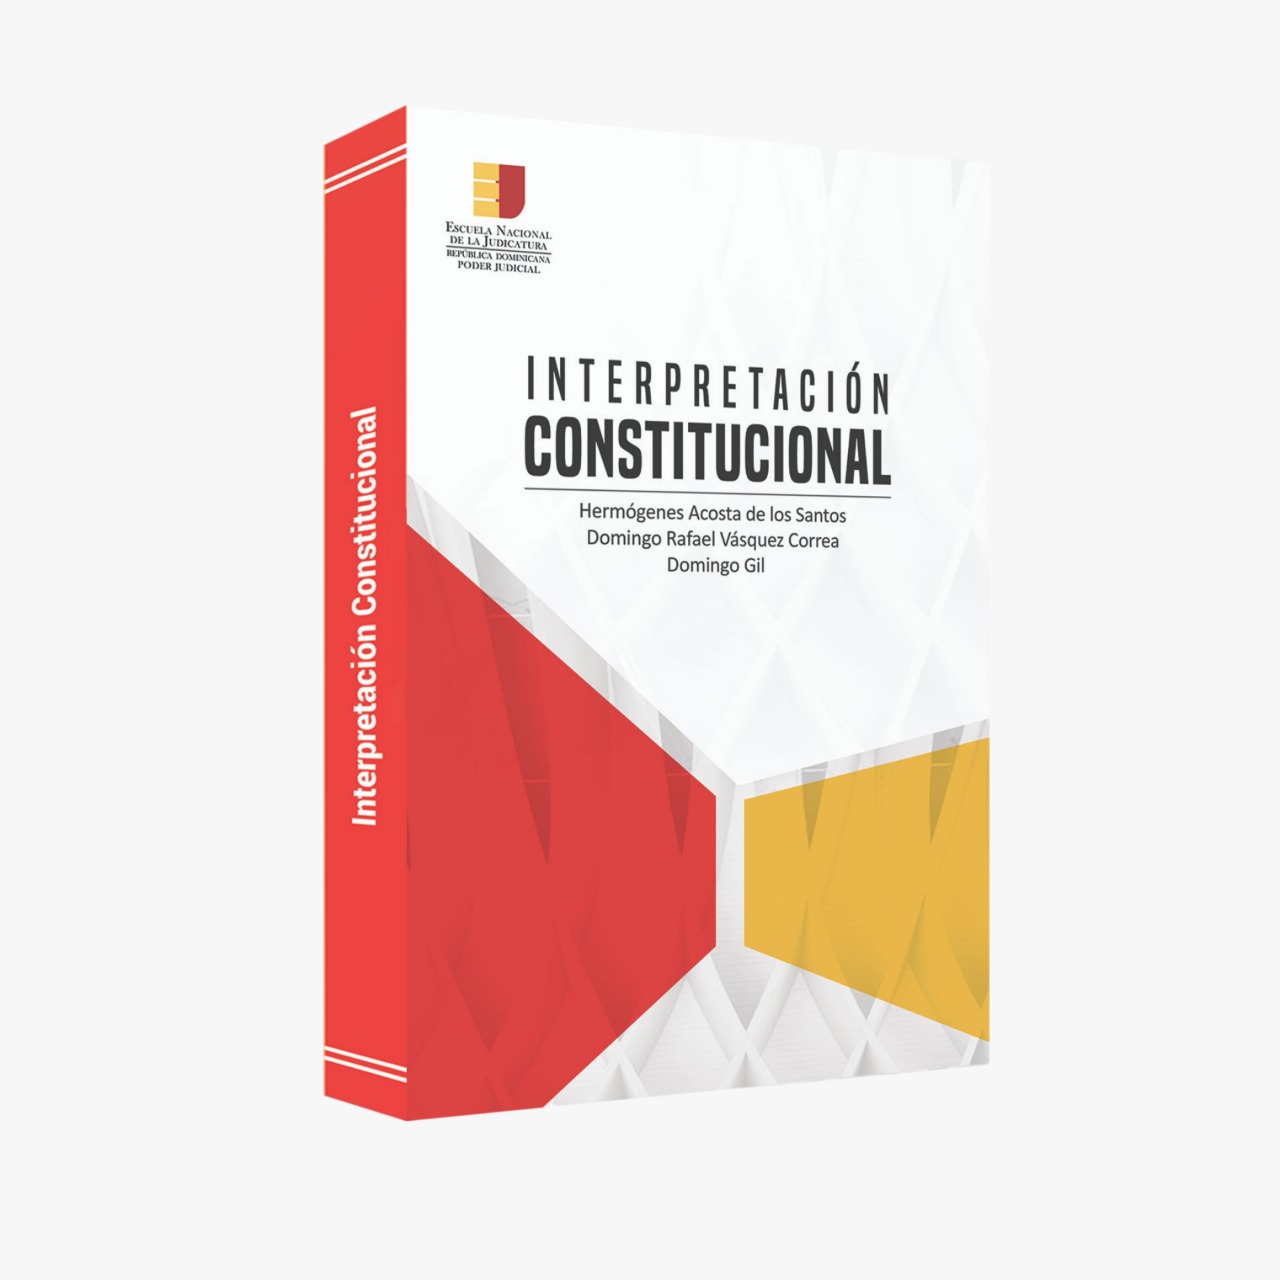 Presentan libro escrito por los magistrados del TC Hermógenes Acosta de los Santos y Domingo Gil junto el juez Domingo Rafael Vásquez